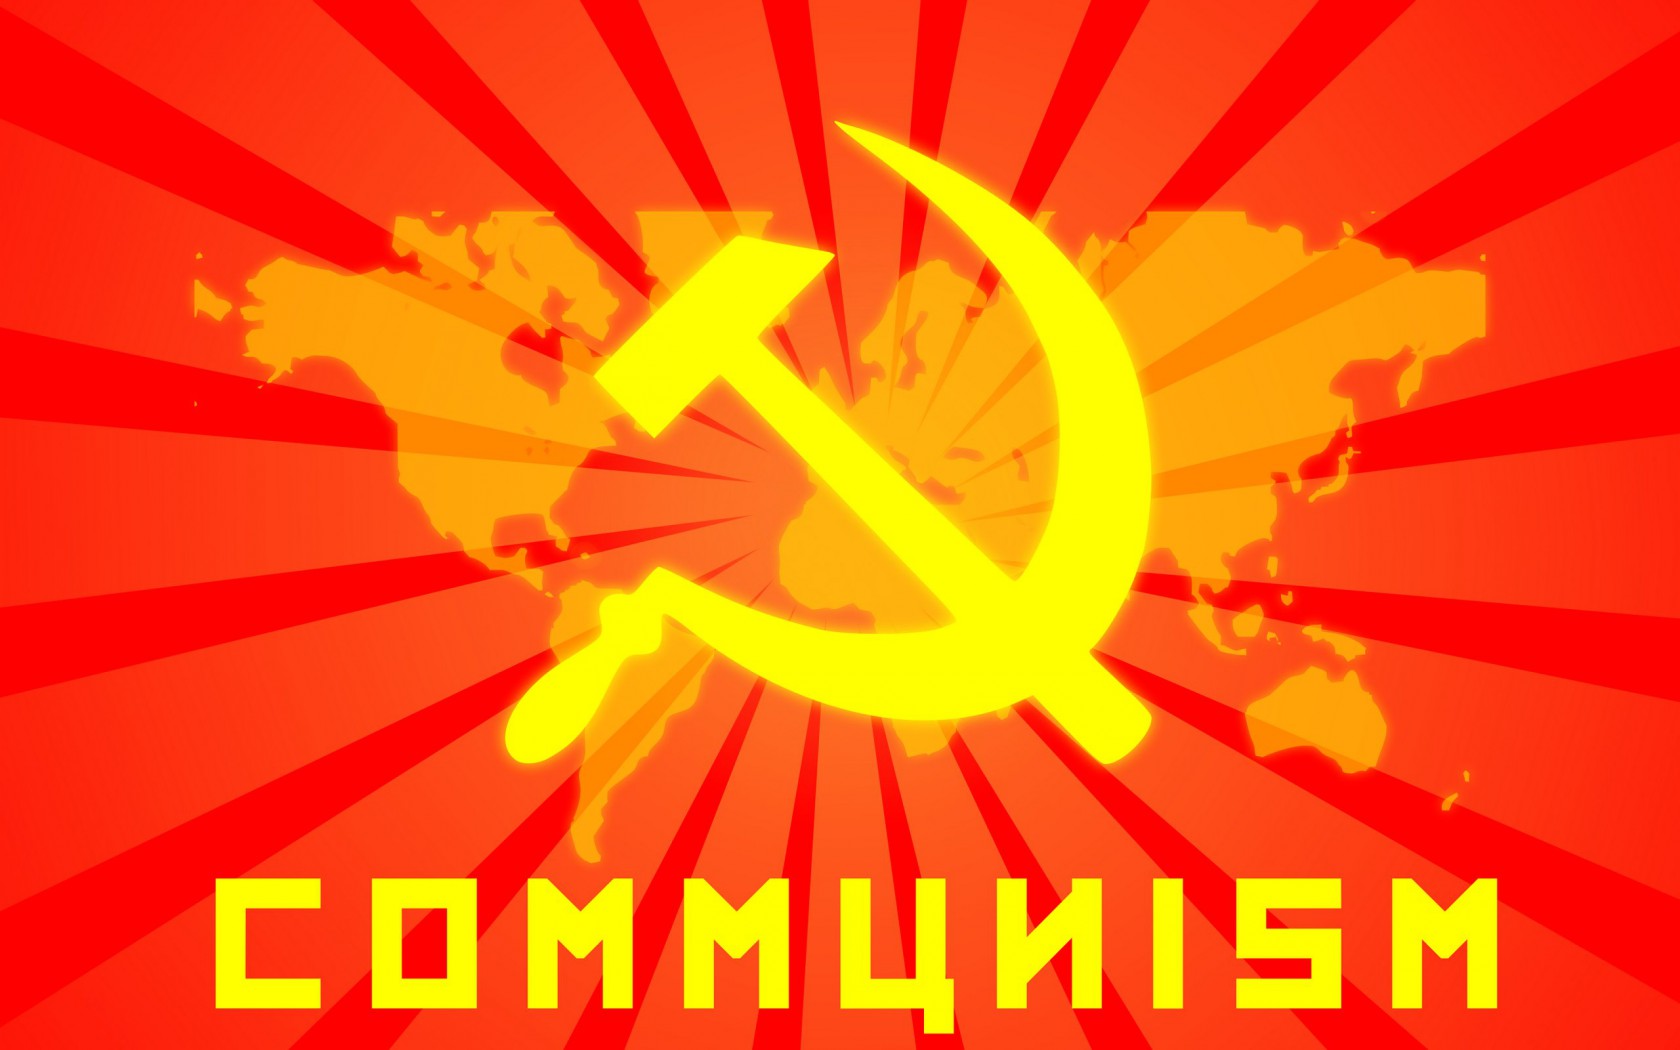 Tapeta, obrzek Komunismus - 1680x1050 px. Wallpaper na plochu PC zdarma